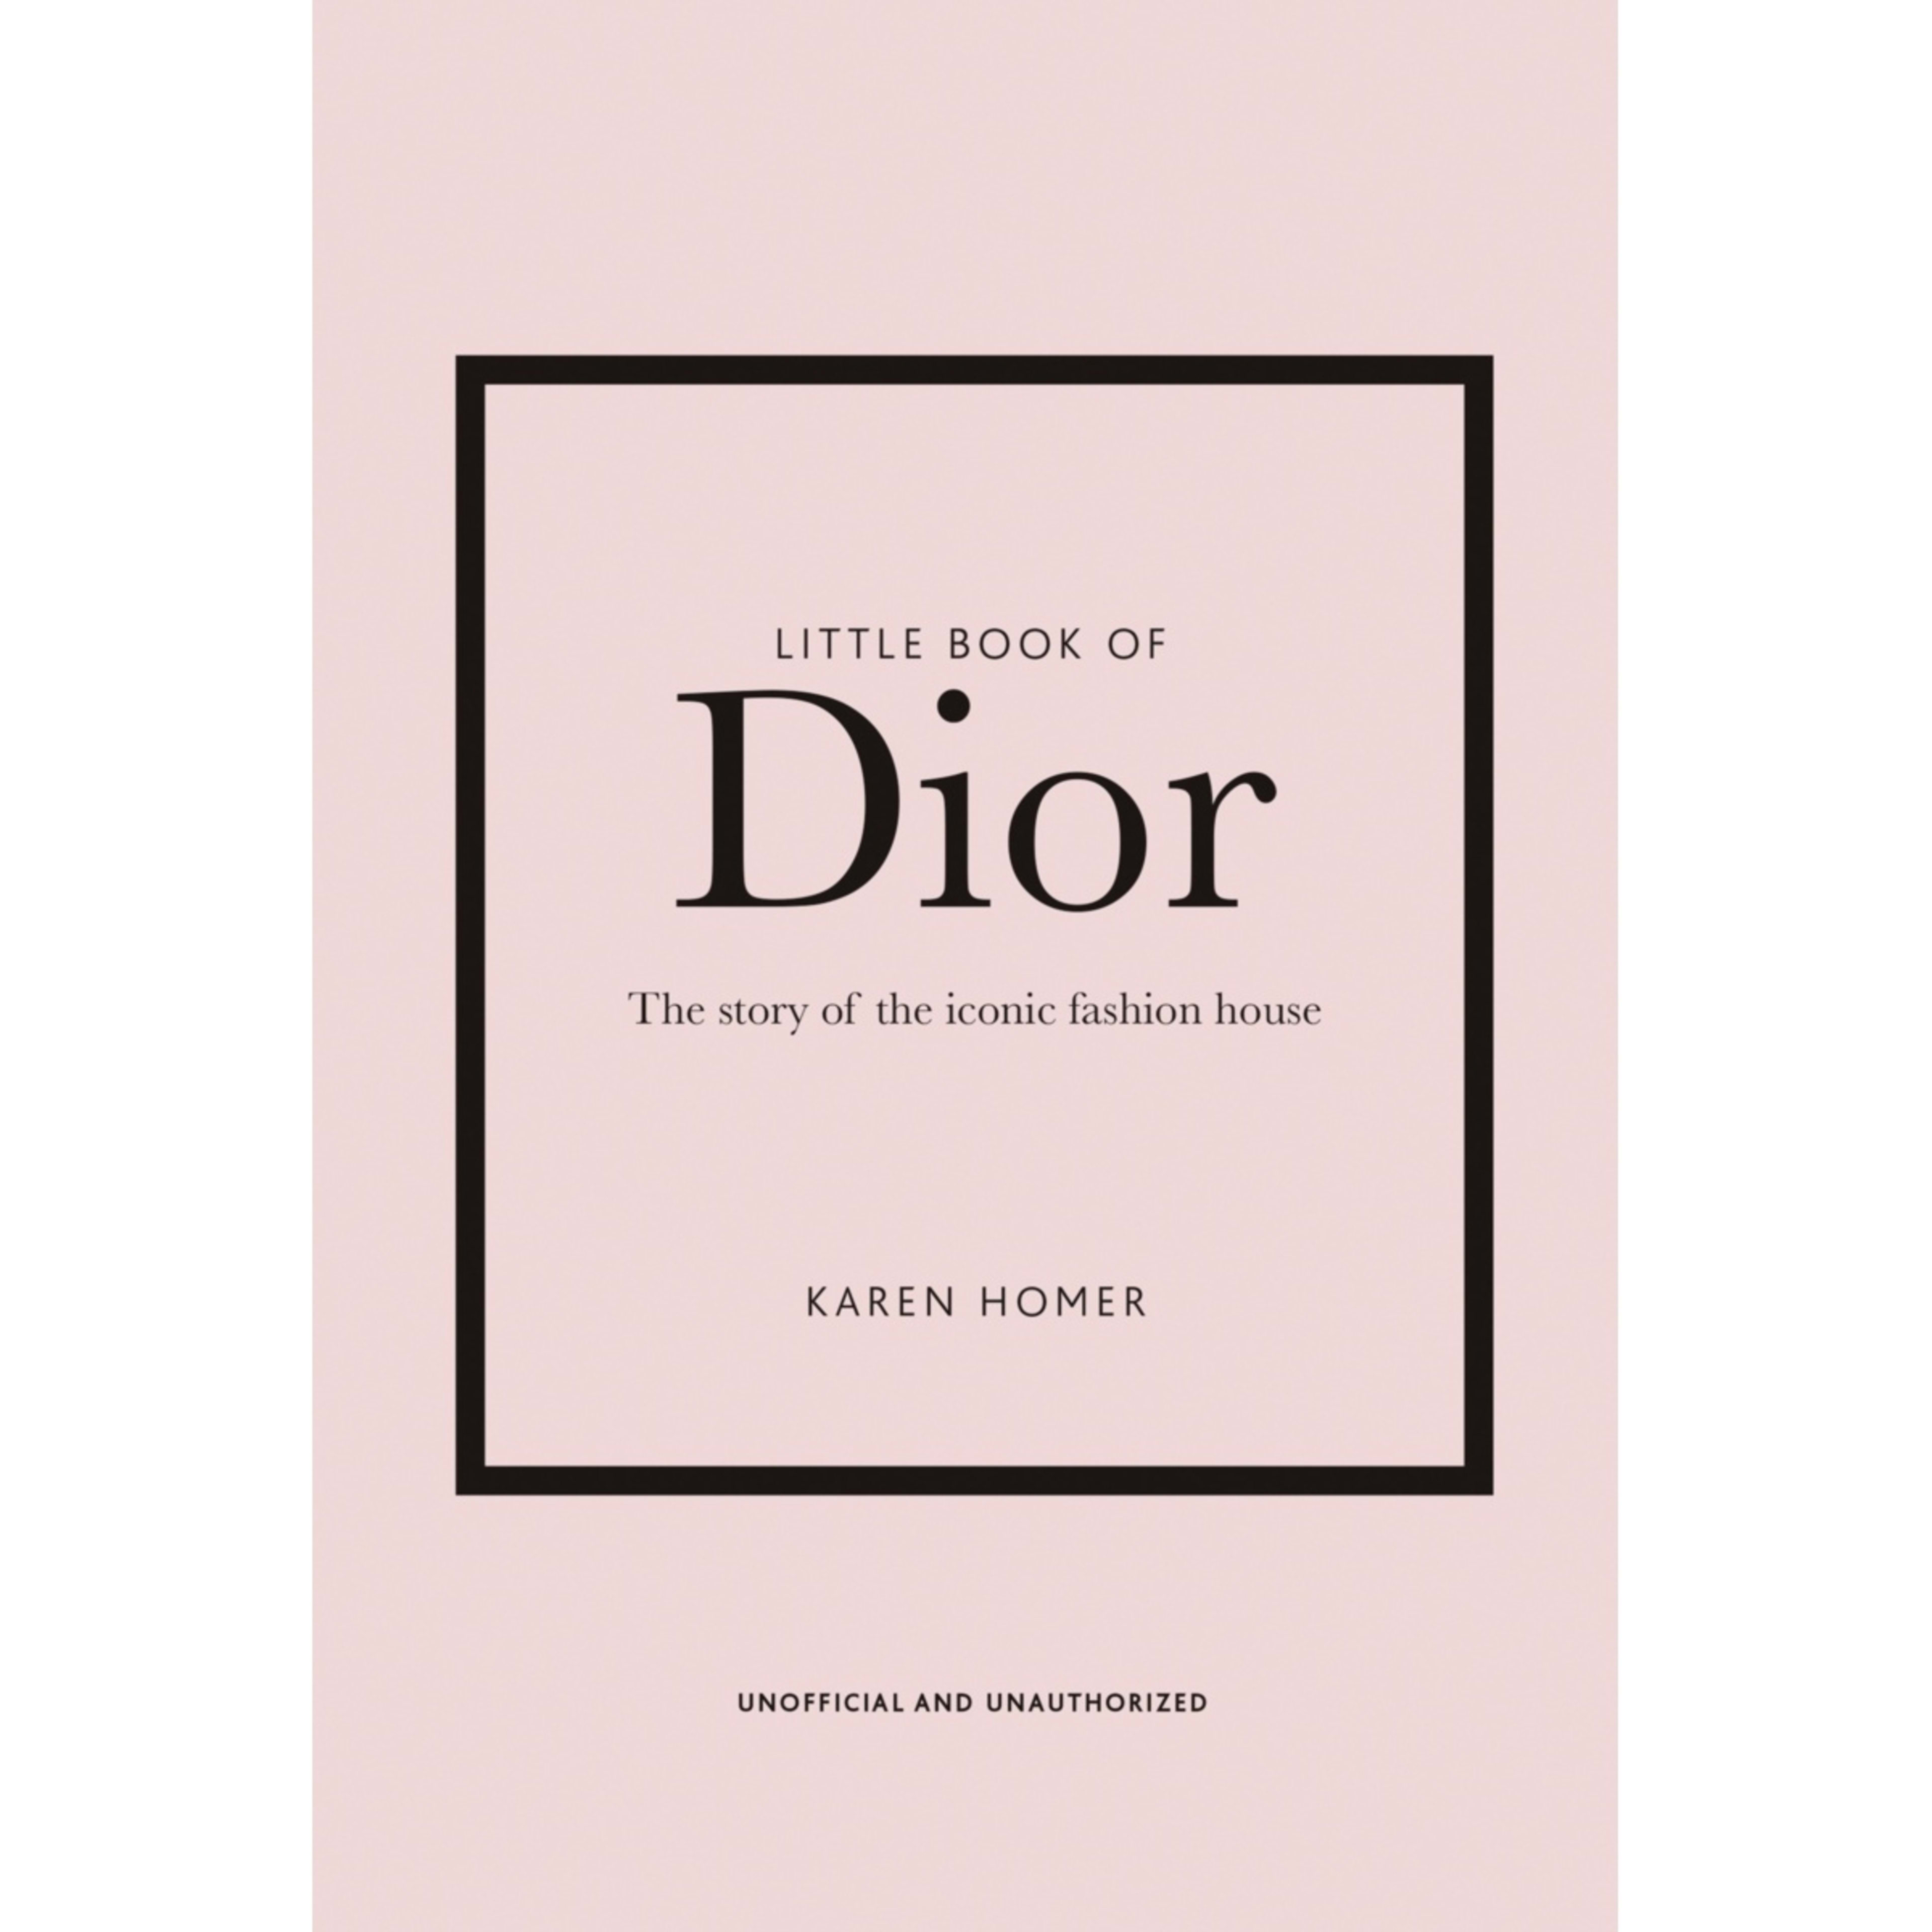 Little Book of Dior by Karen Homer - Book